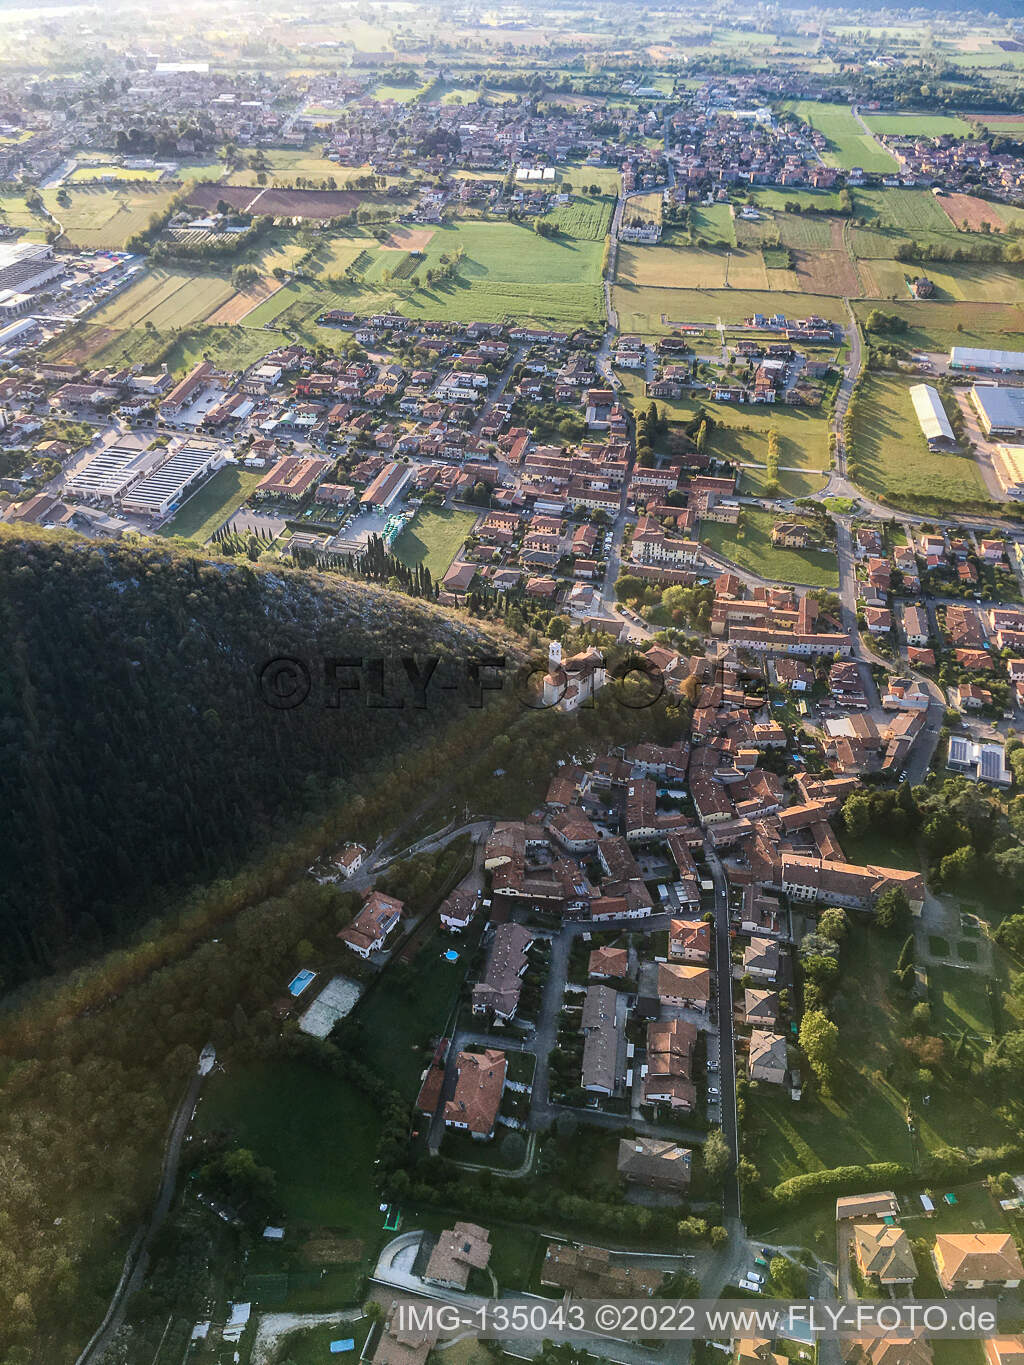 Vue aérienne de Église de Santa Giulia à Paitone dans le département Brescia, Italie